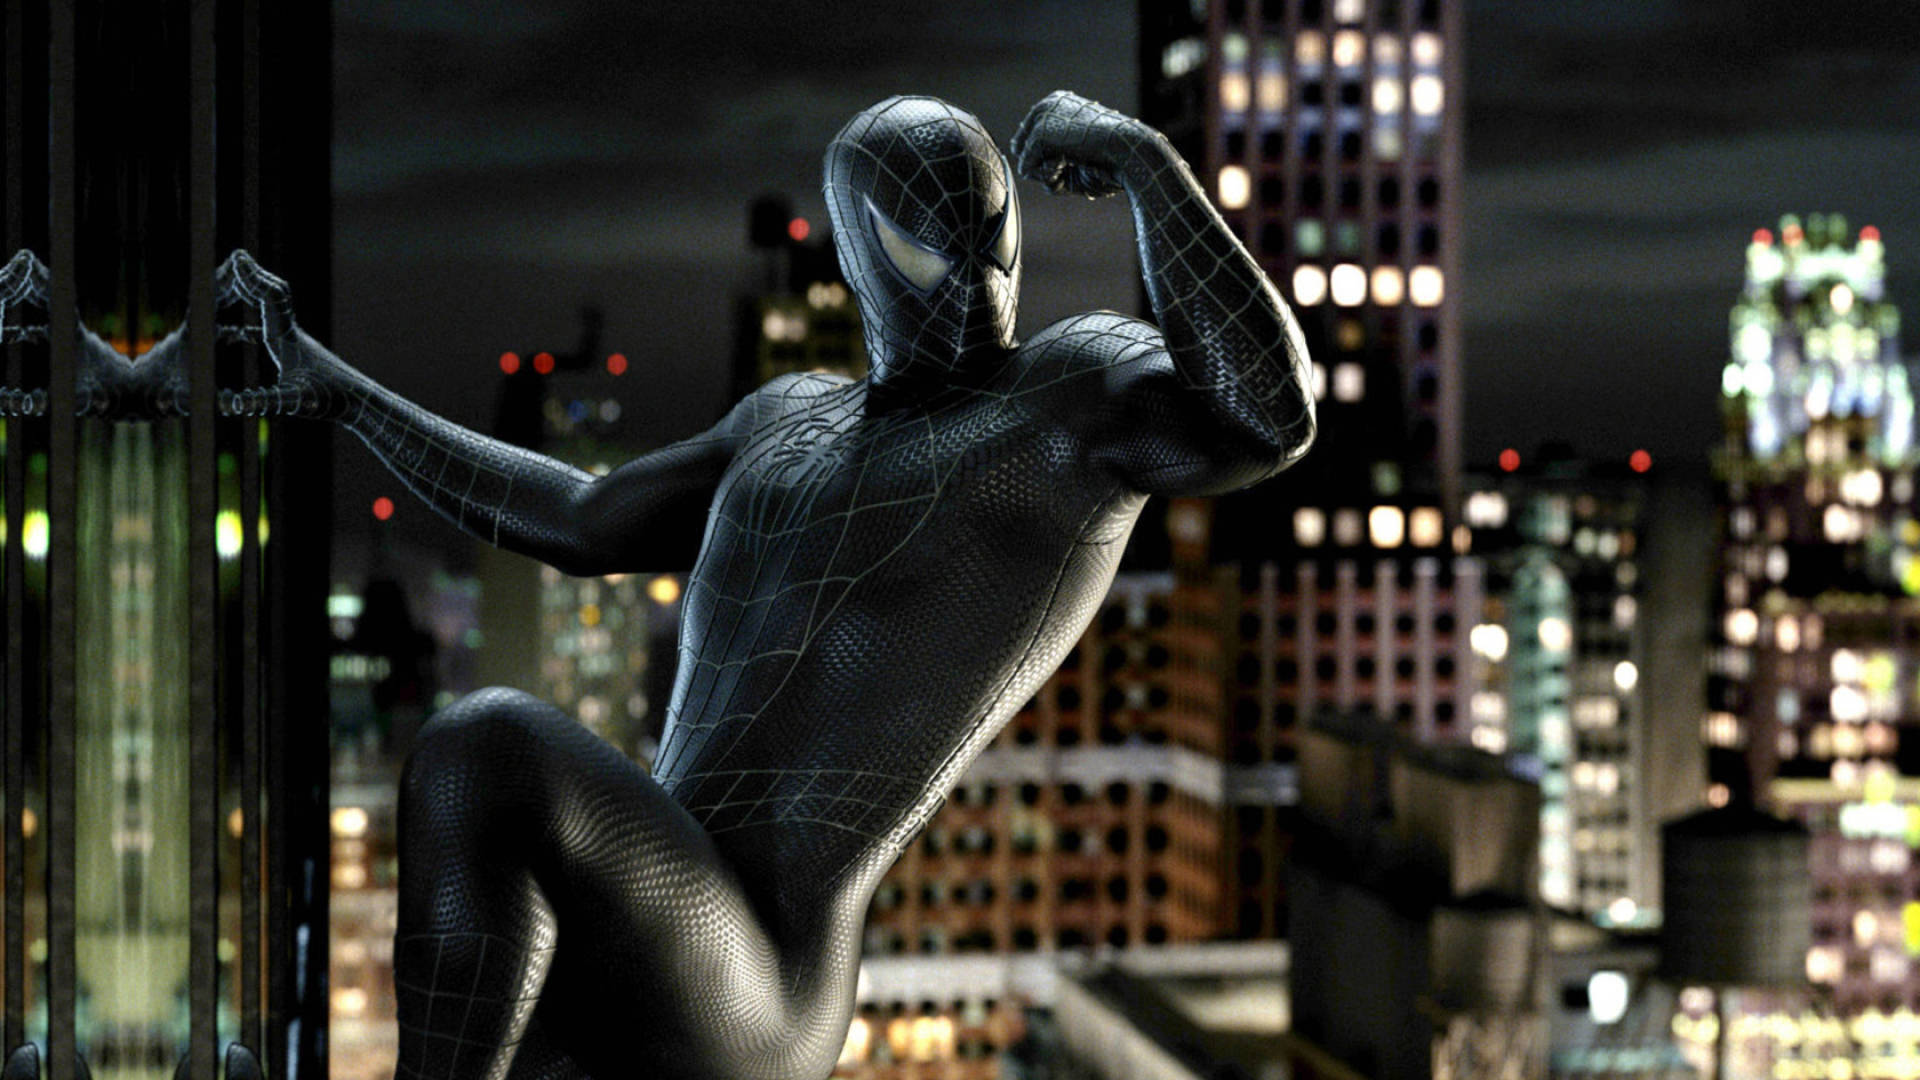 Symbiote Costume Spider Man Background